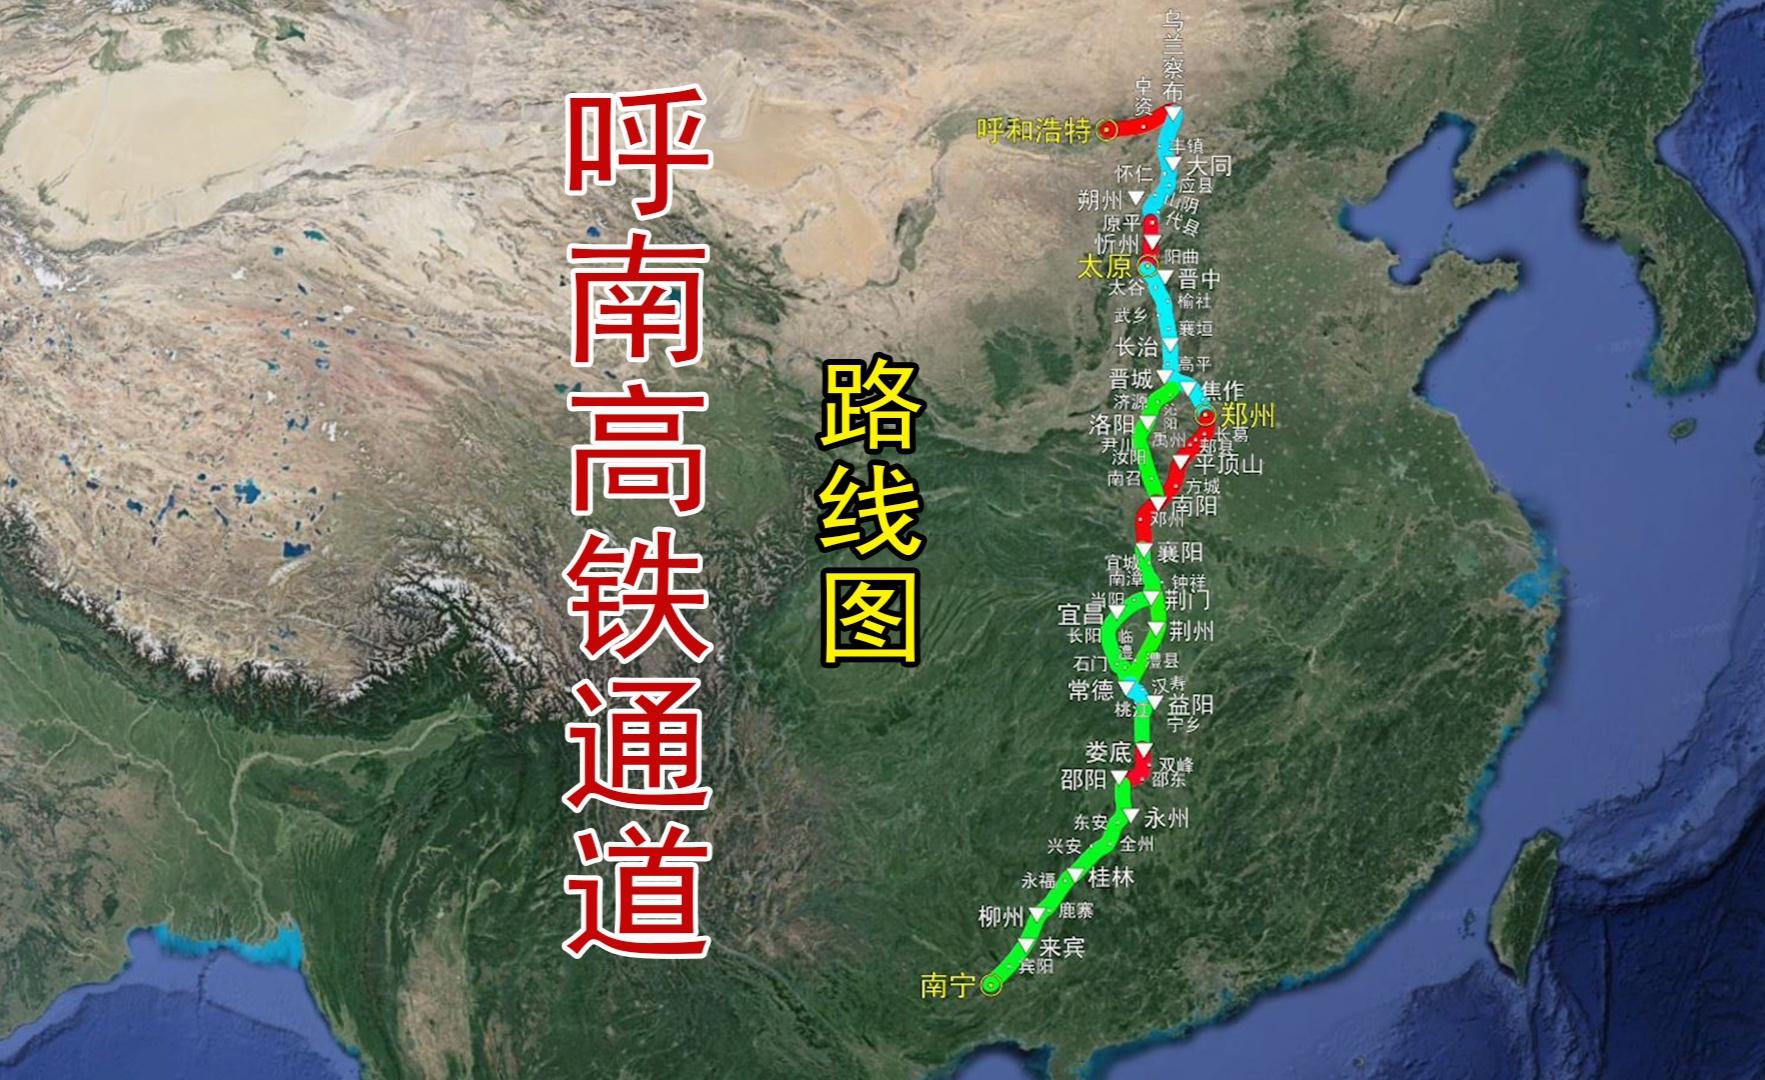 洛阳的十字枢纽梦:呼南高铁绕道走郑州,豫西通道或成鸡肋